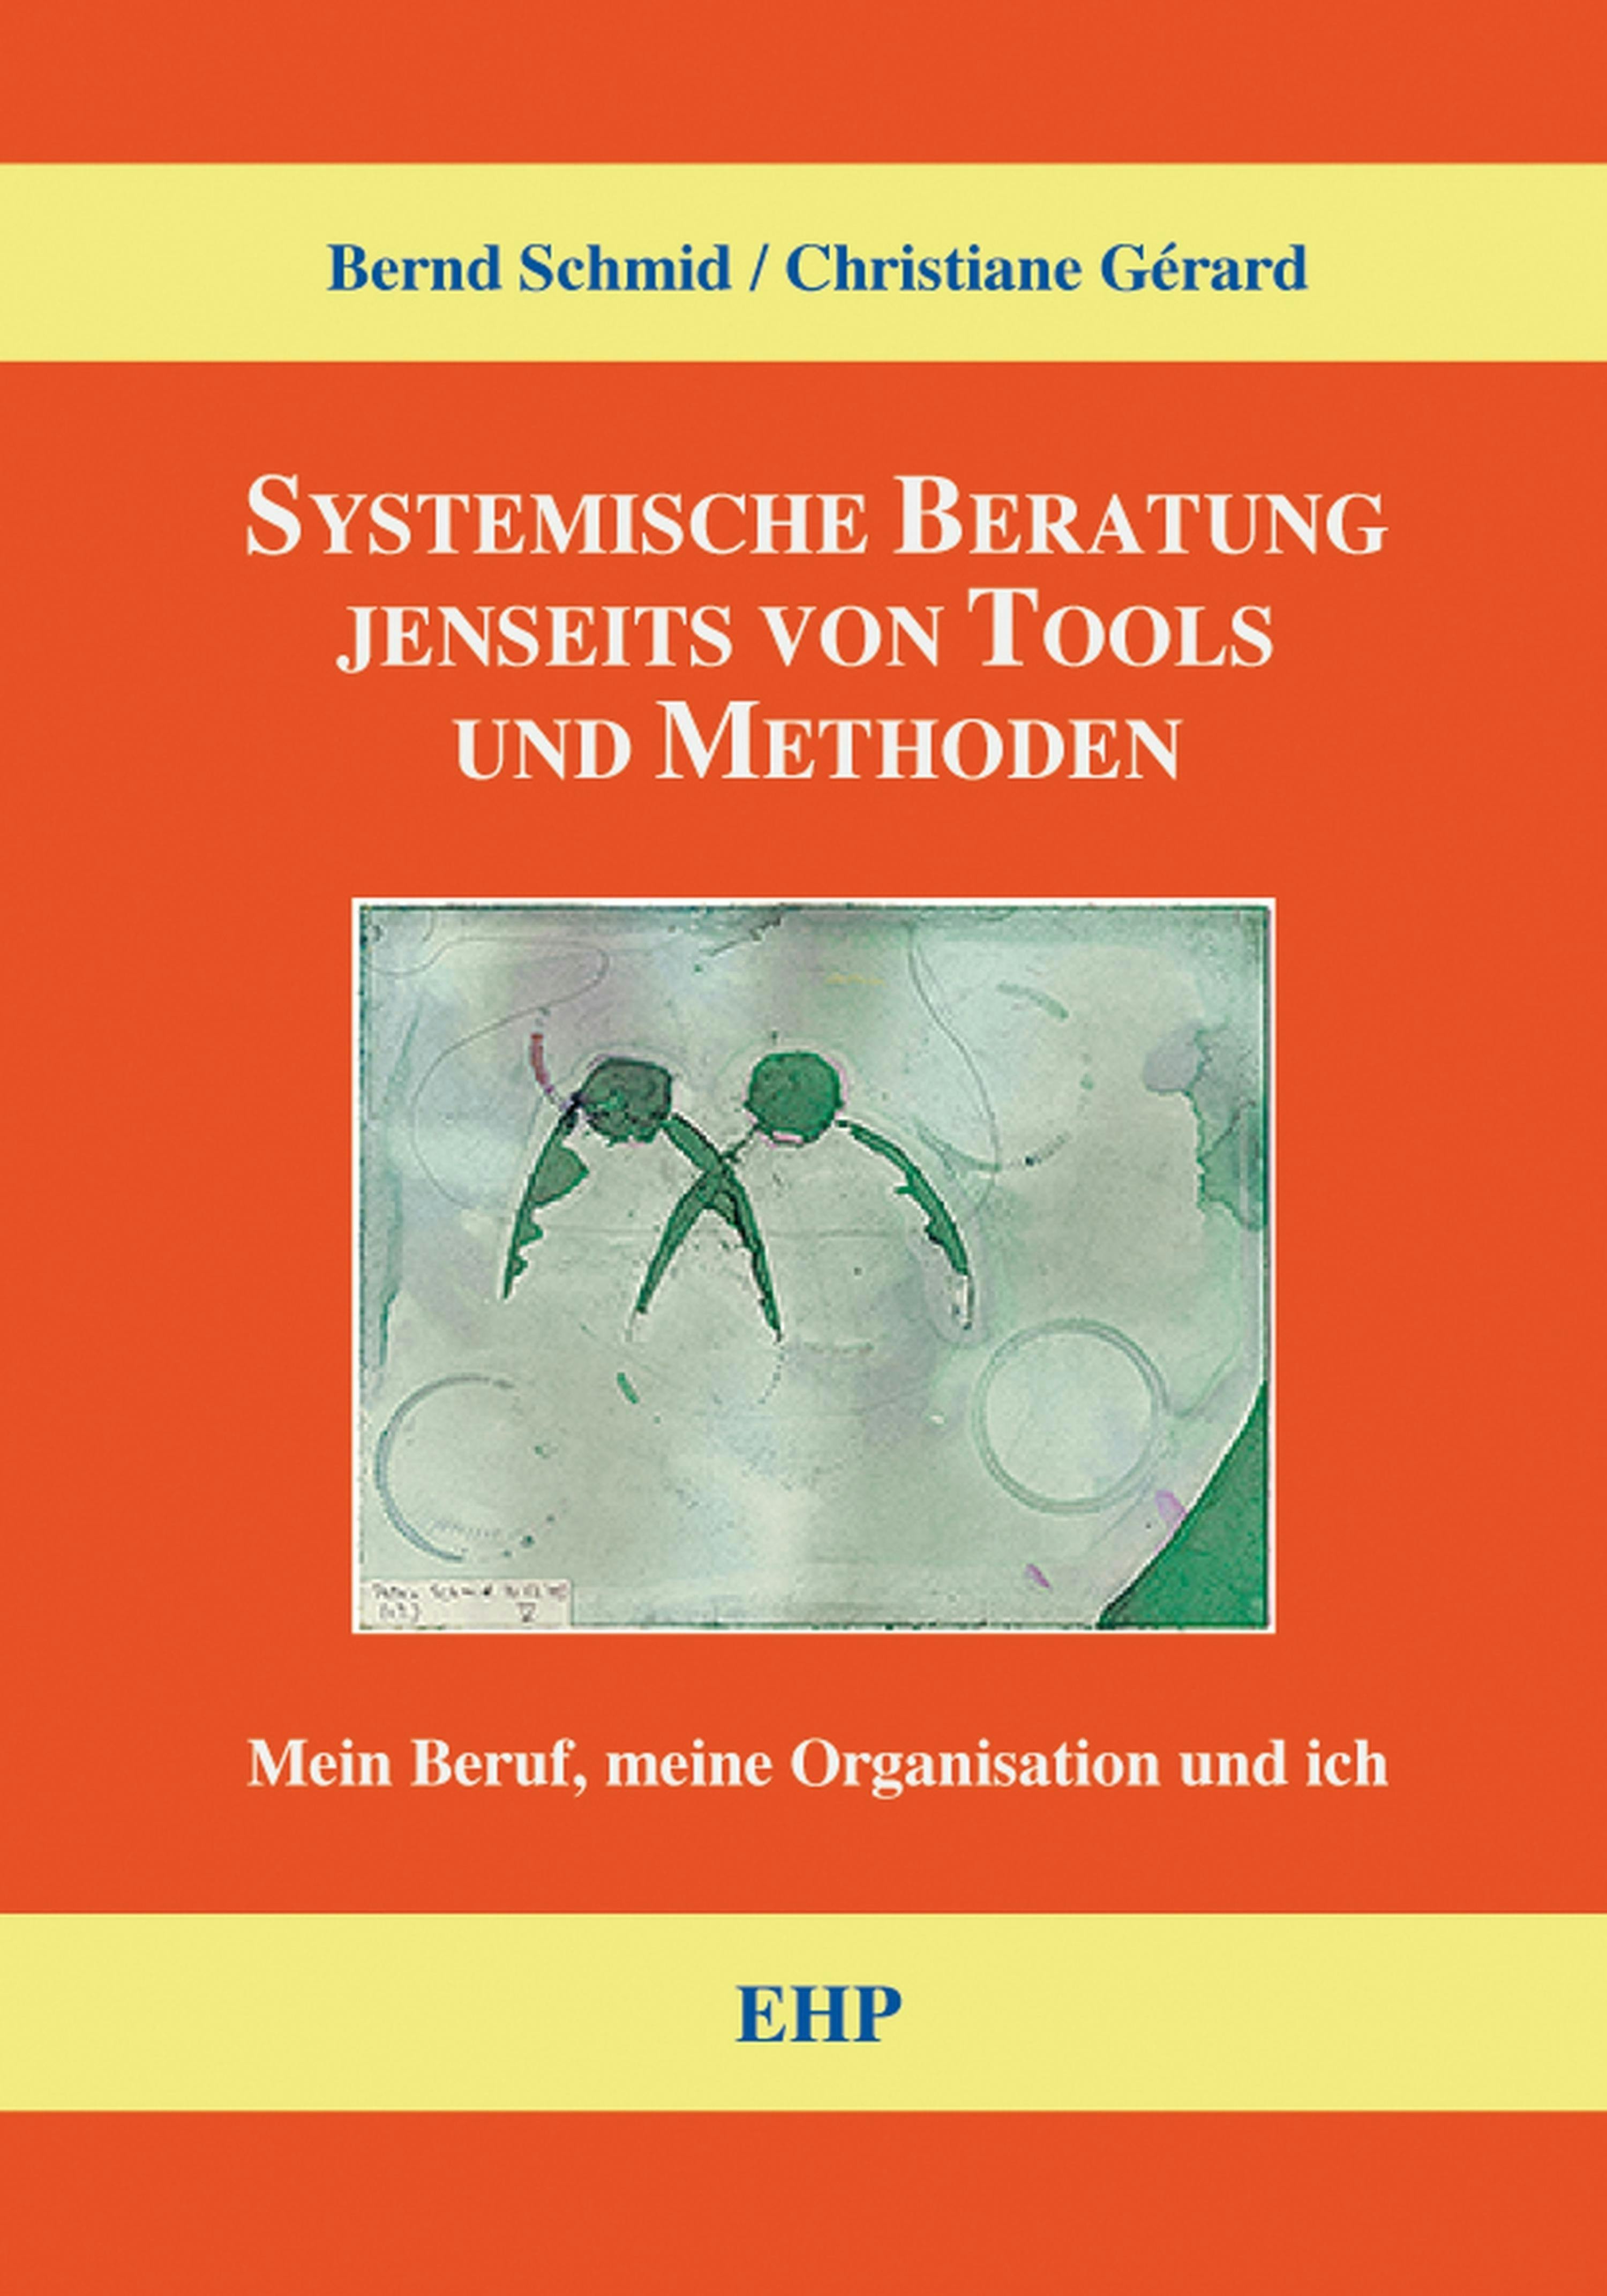 Systemische Beratung jenseits von Tools und Methoden: Mein Beruf, meine Organisation und ich - Christiane Gérard, Bernd Schmid